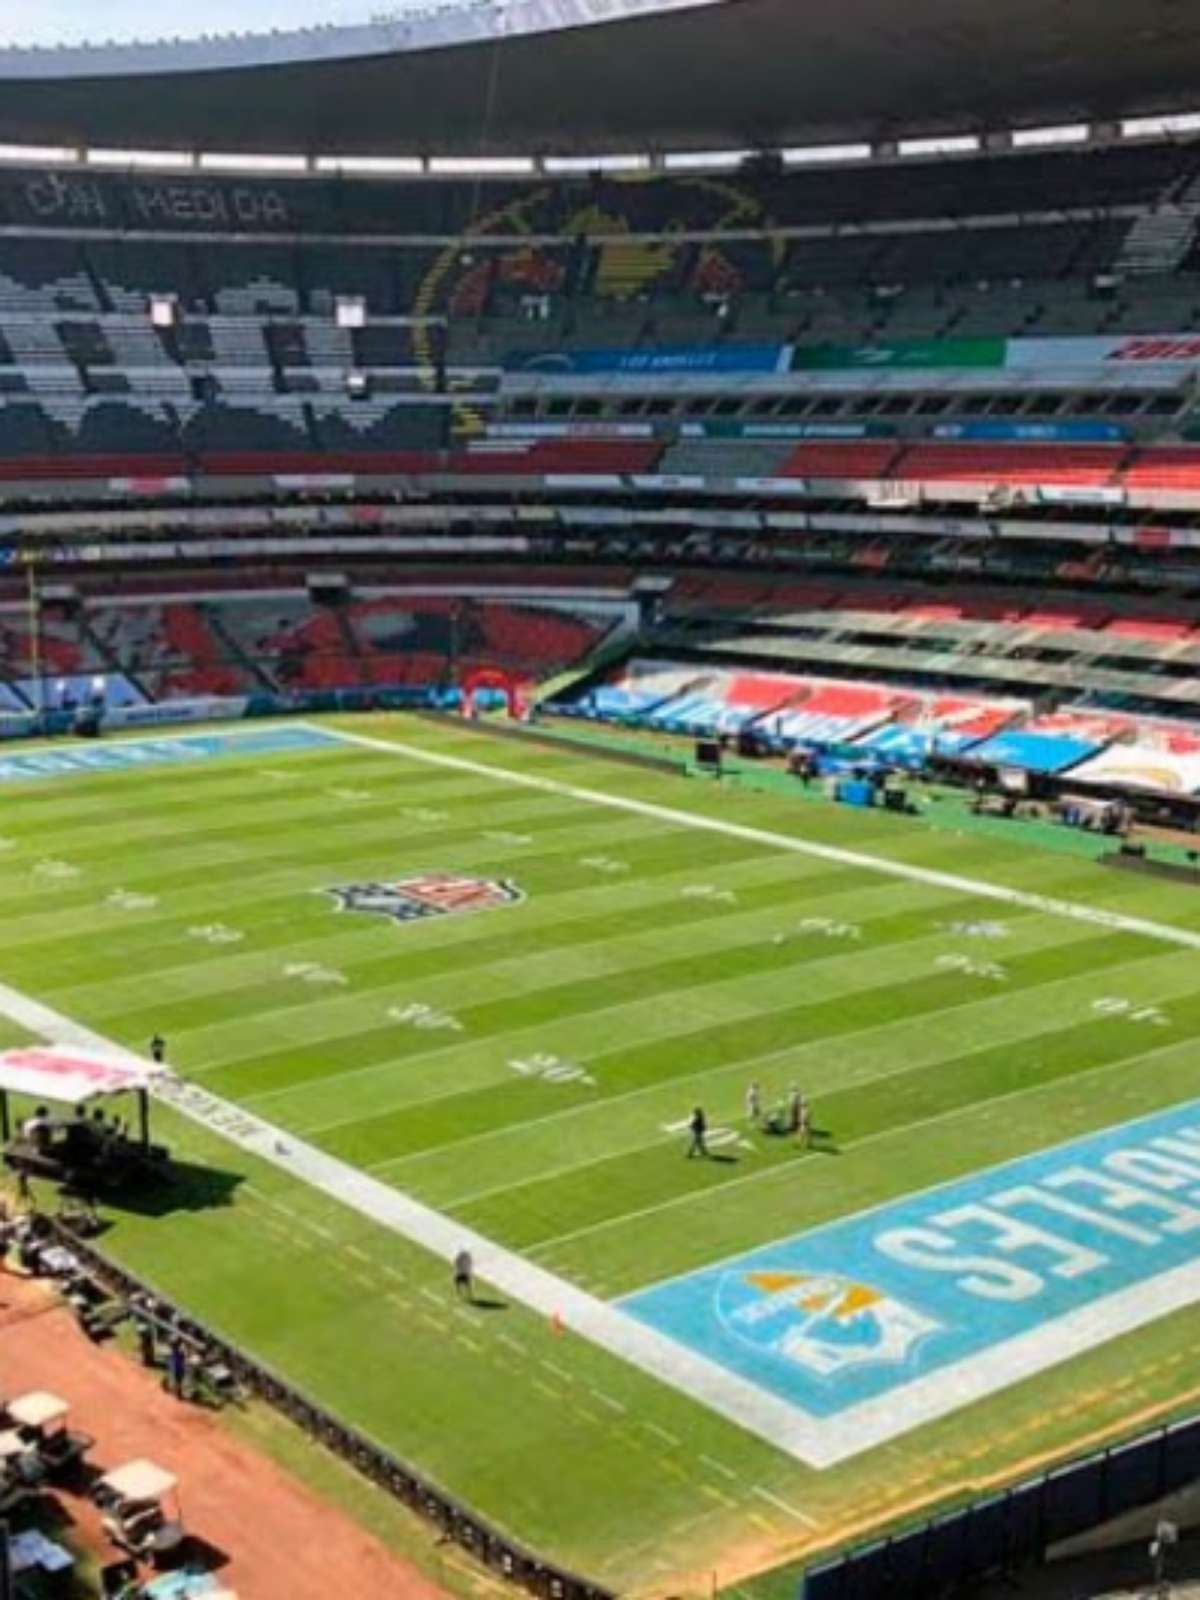 Por más condições do gramado, NFL transfere jogo da Cidade do México para Los  Angeles, futebol americano